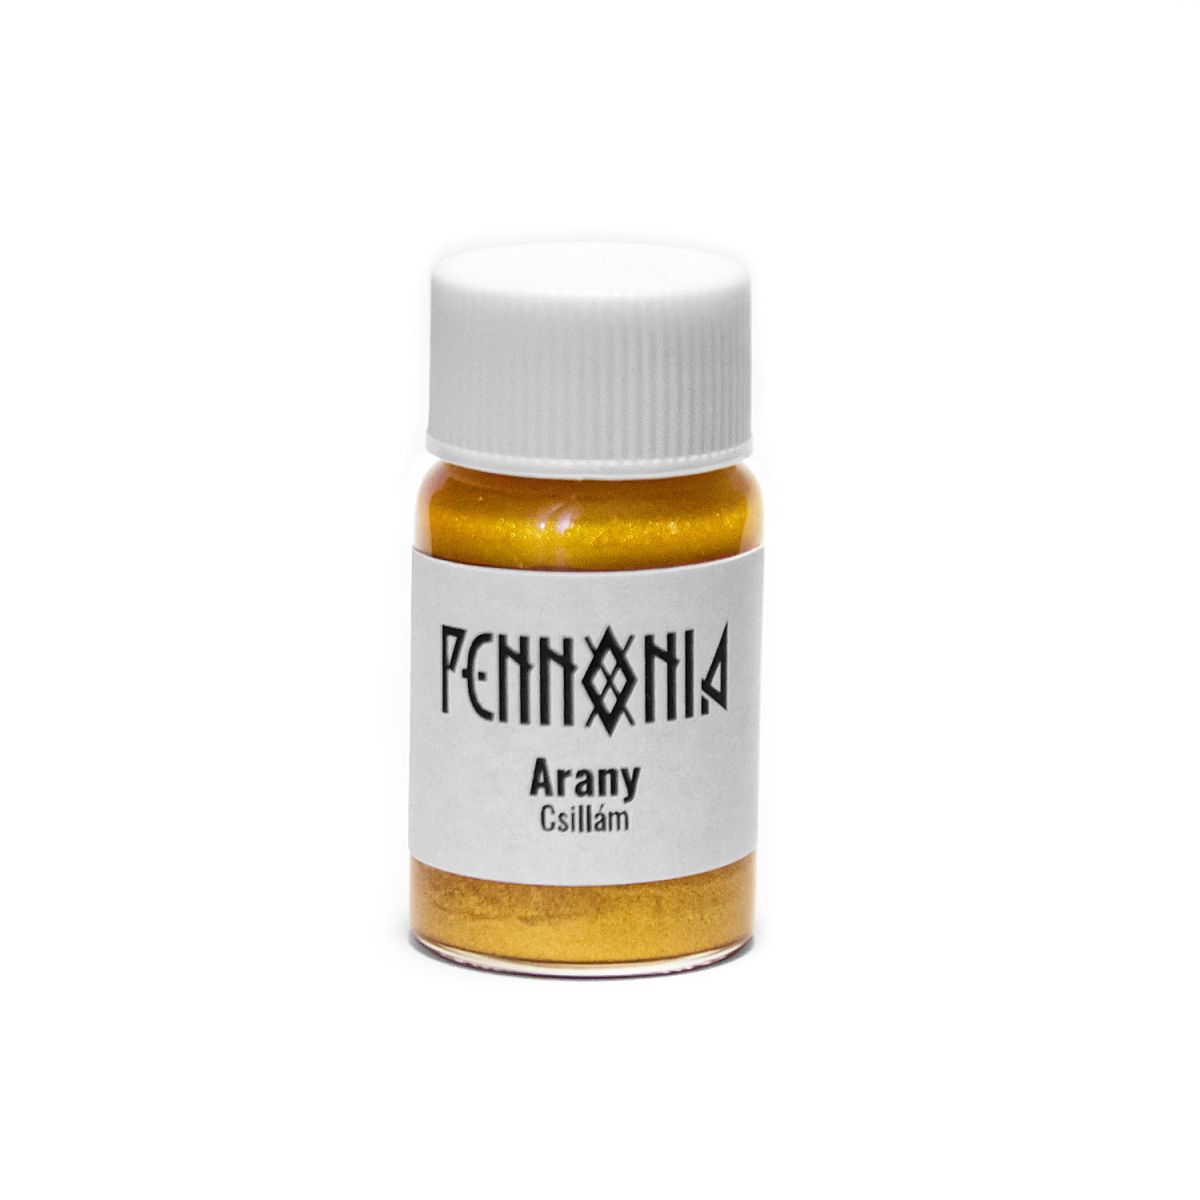 Pennonia shimmer additive - Arany